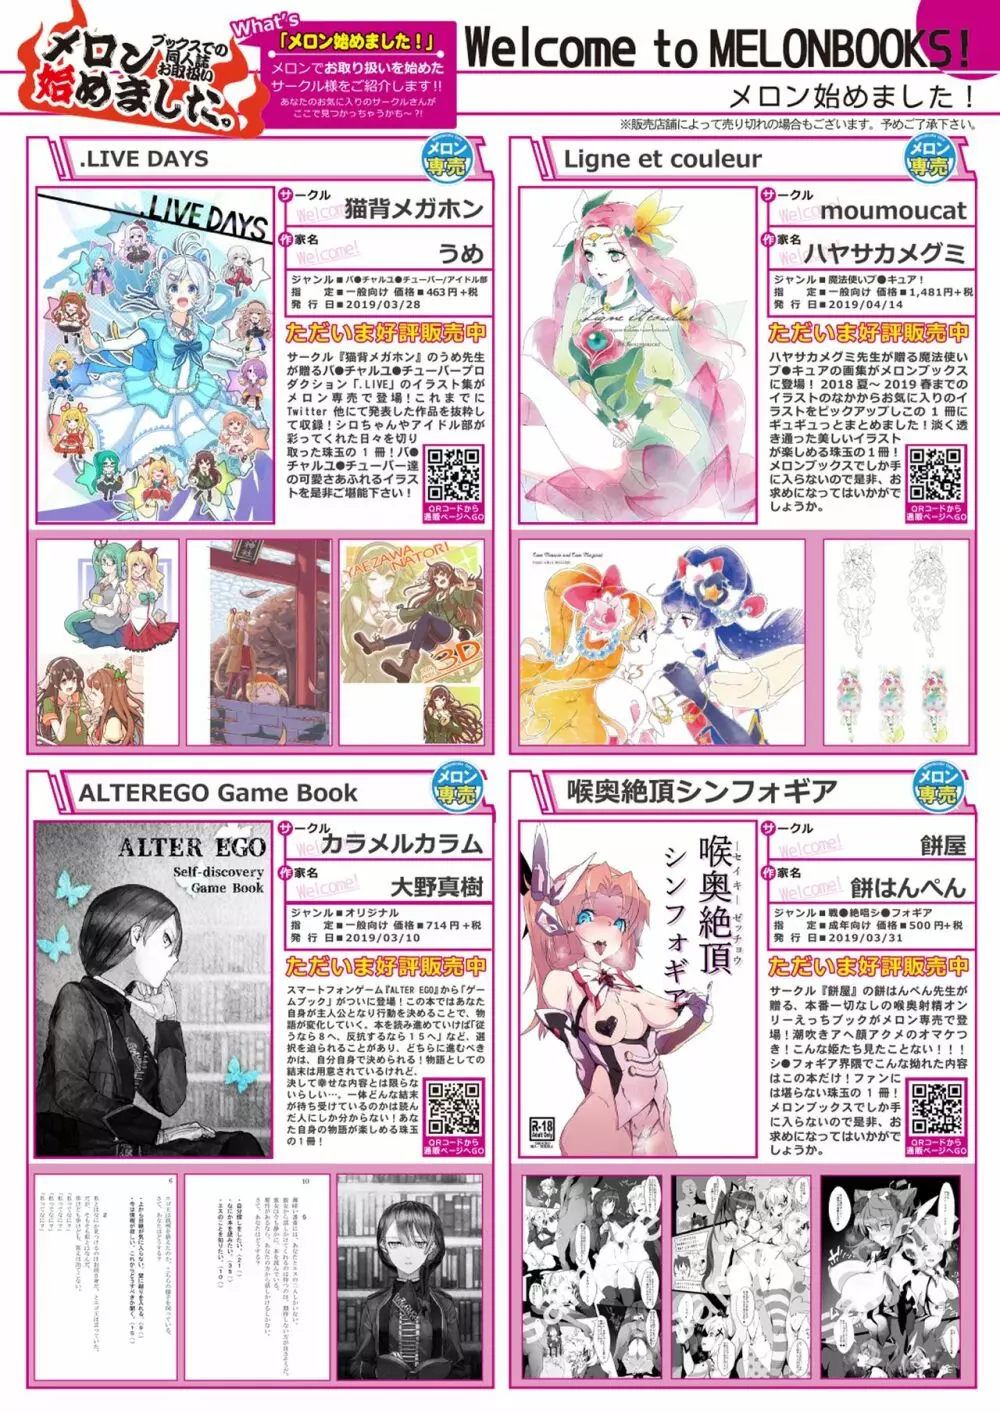 月刊うりぼうざっか店 2019年5月10日発行号 5ページ